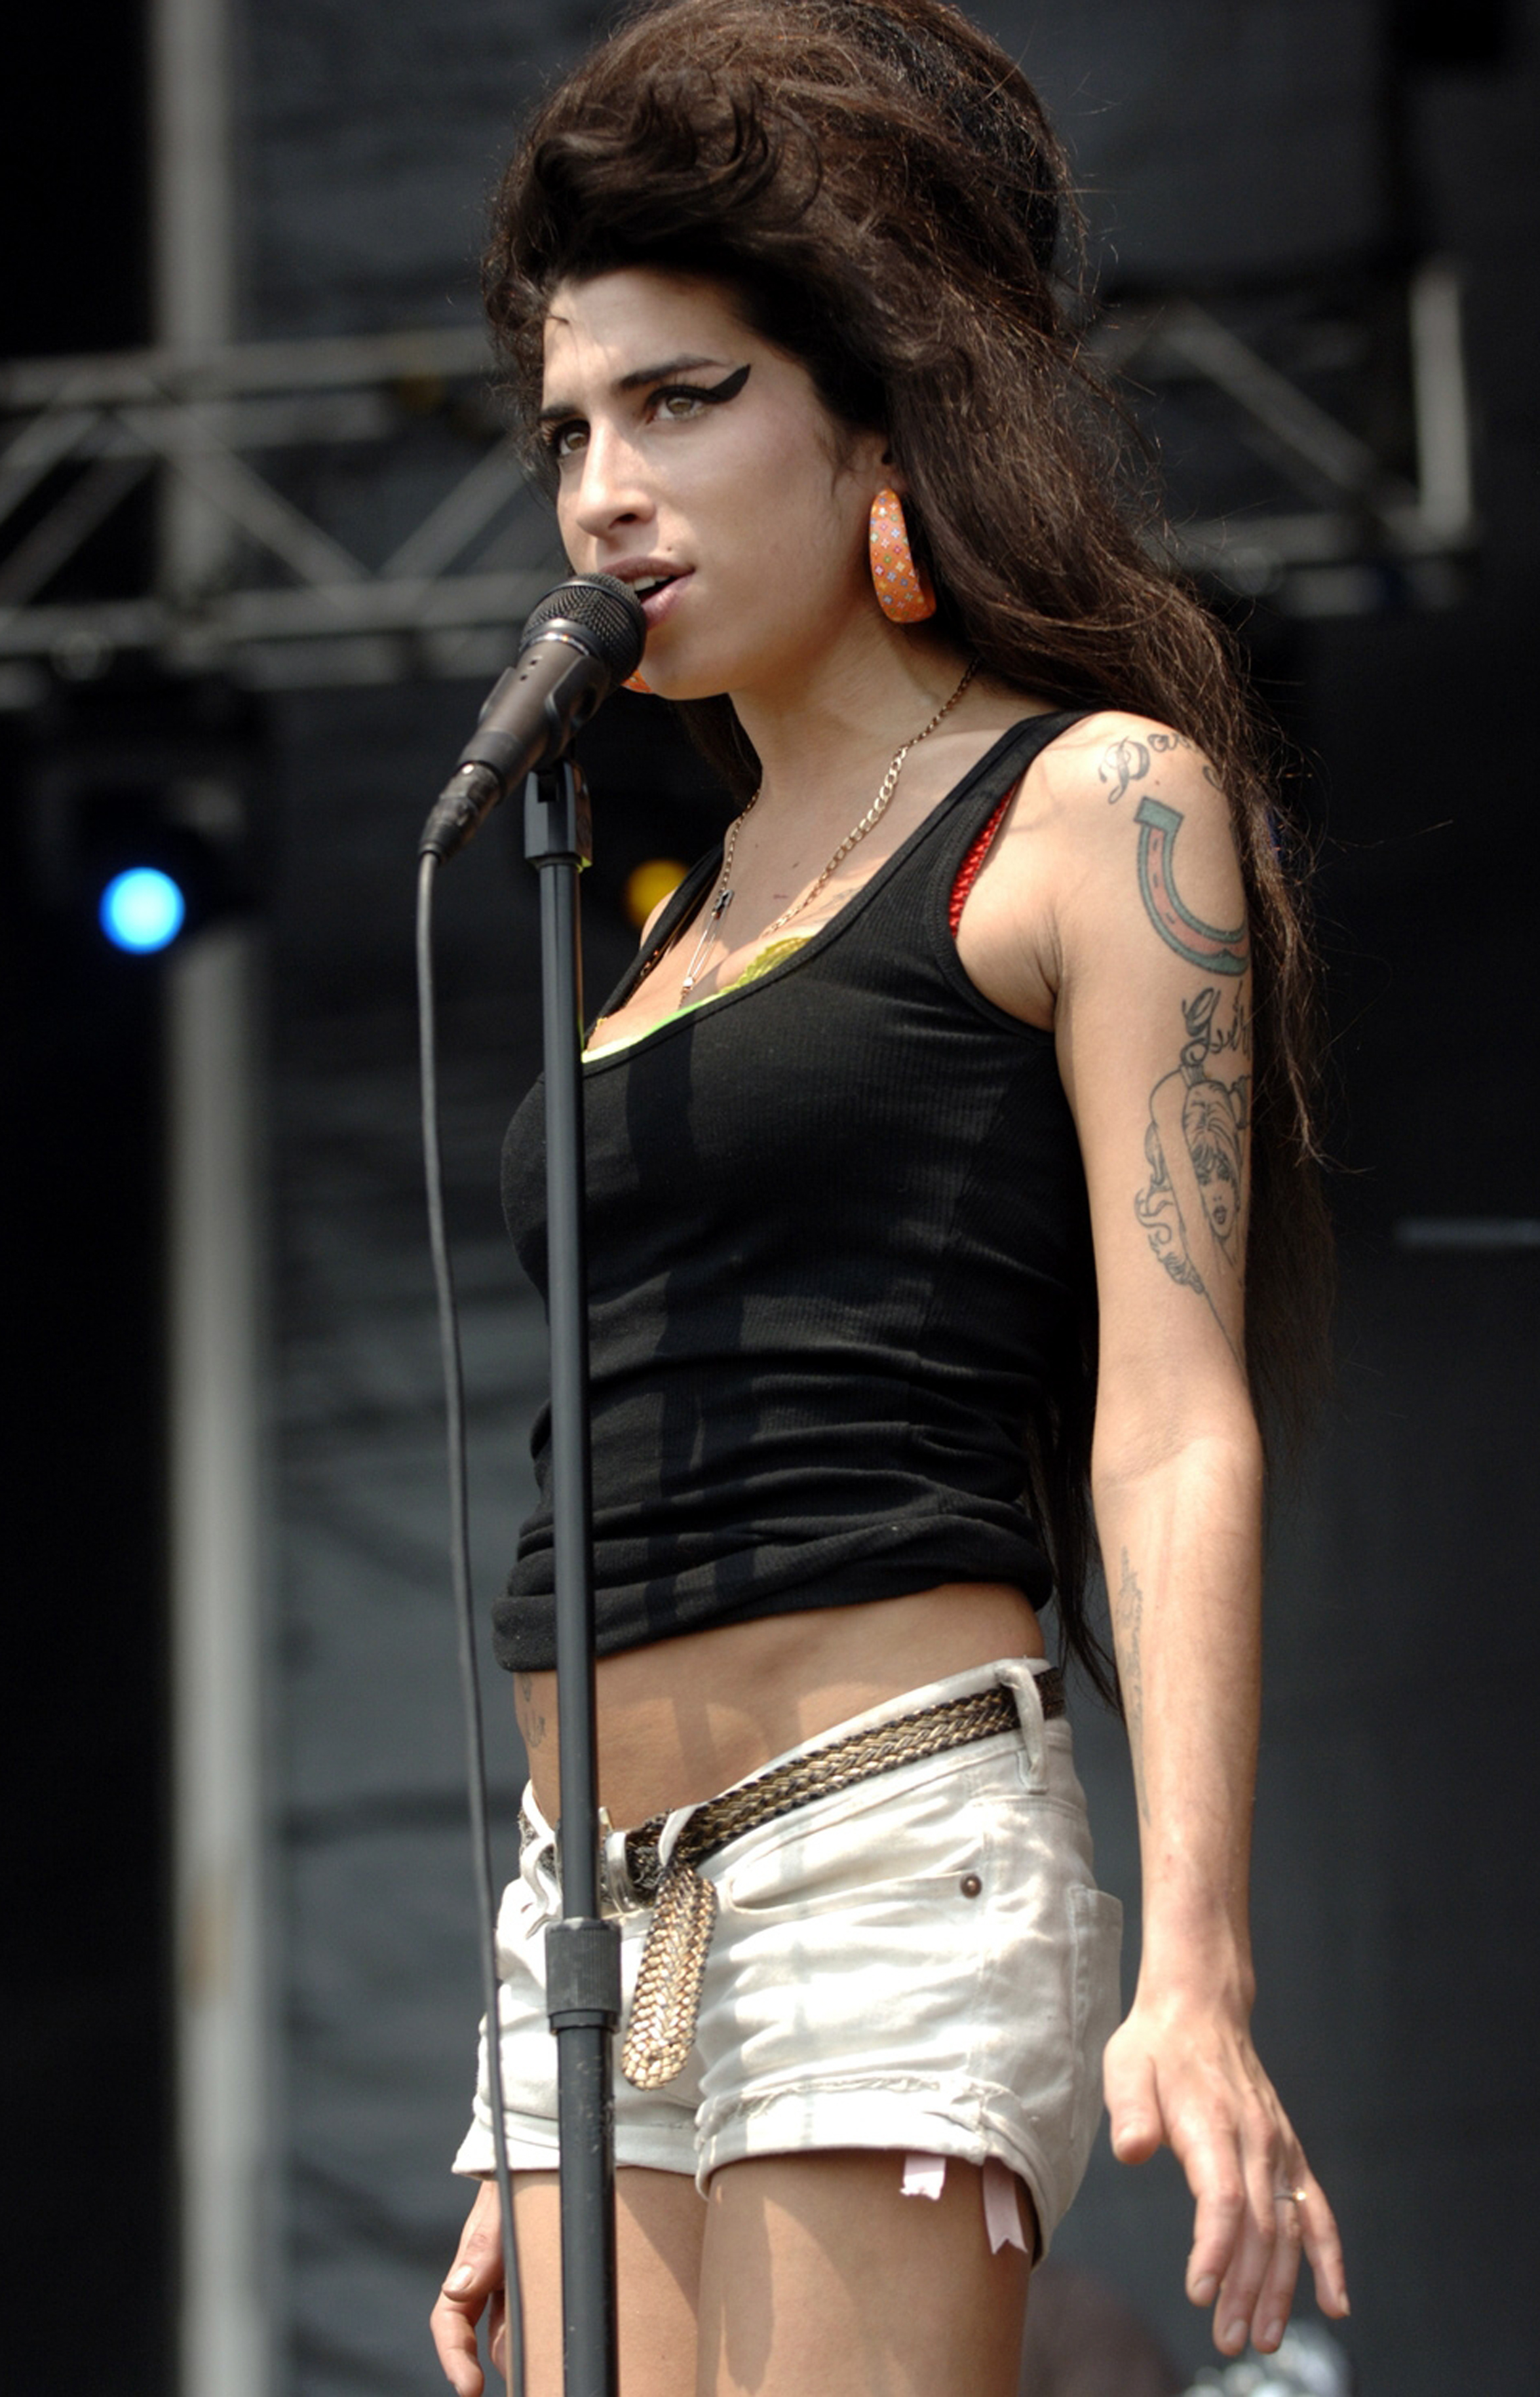 Regresa Amy Winehouse a rehabilitación